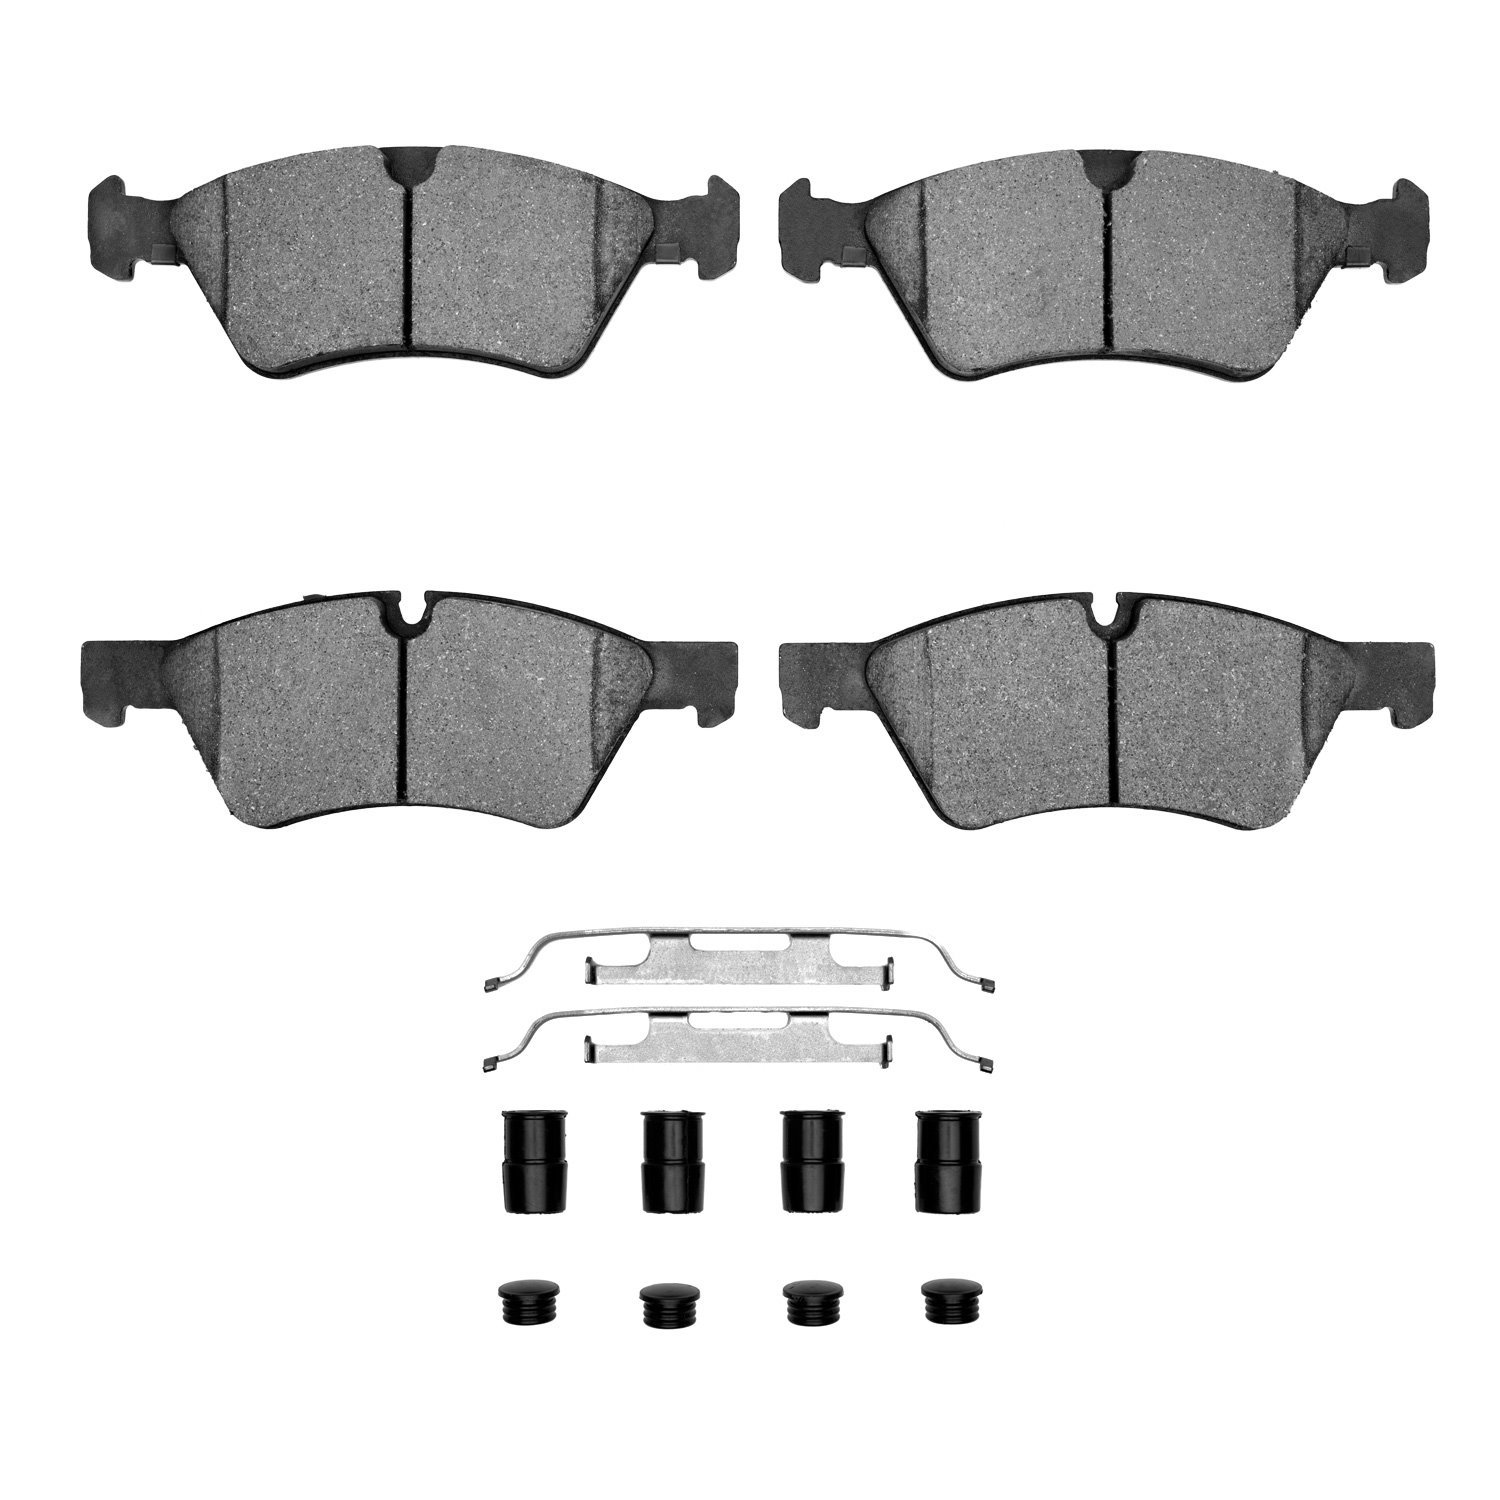 1311-1123-01 3000-Series Semi-Metallic Brake Pads & Hardware Kit, 2005-2012 Mercedes-Benz, Position: Front